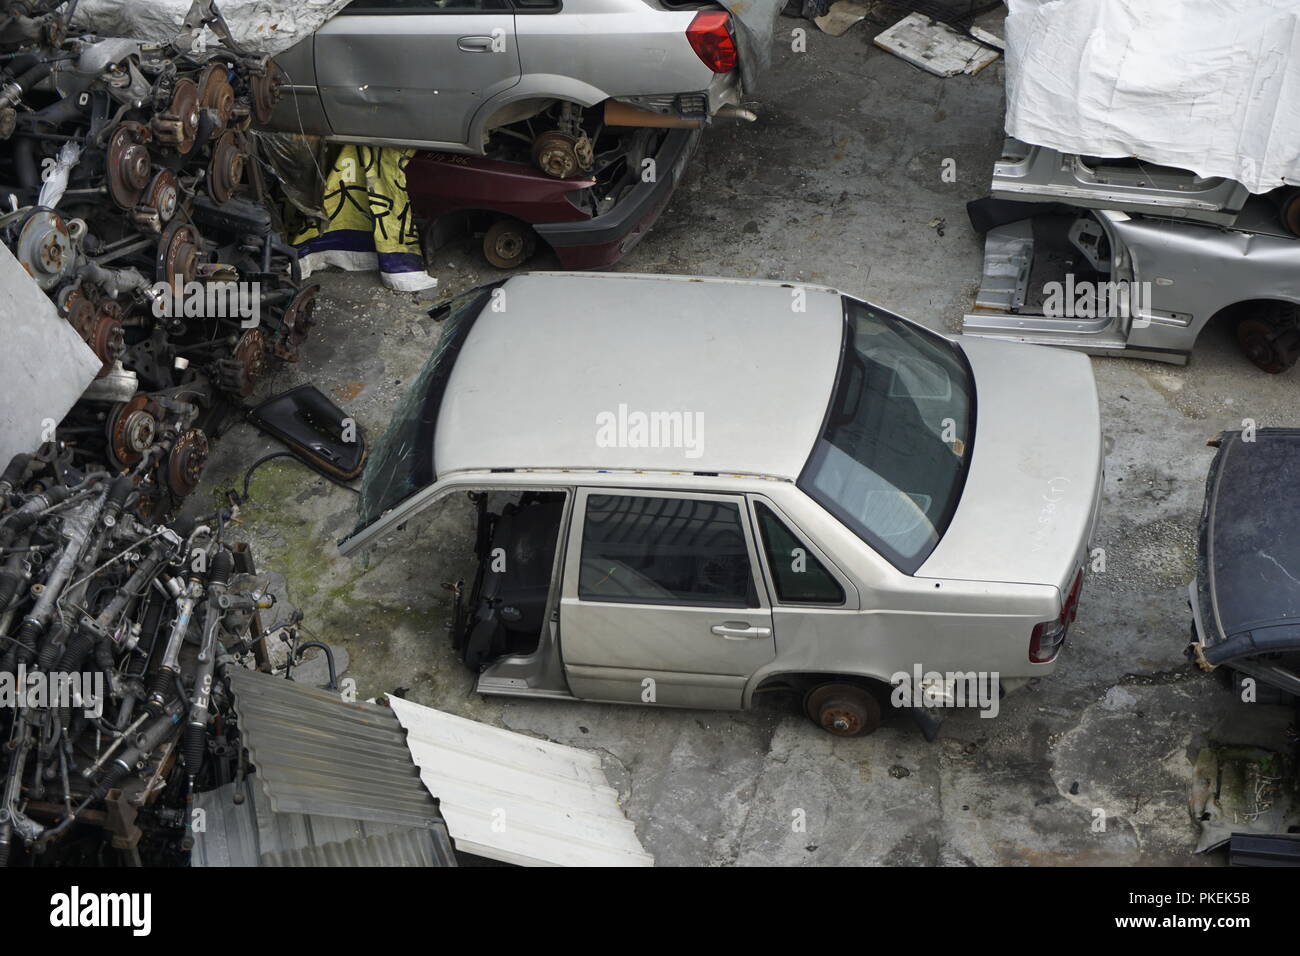 Kereta potong, Auto für illegale Schnitt und Montage am Fahrzeug auf einem backstreet Workshop in Malaysia melden Sie Stockfoto